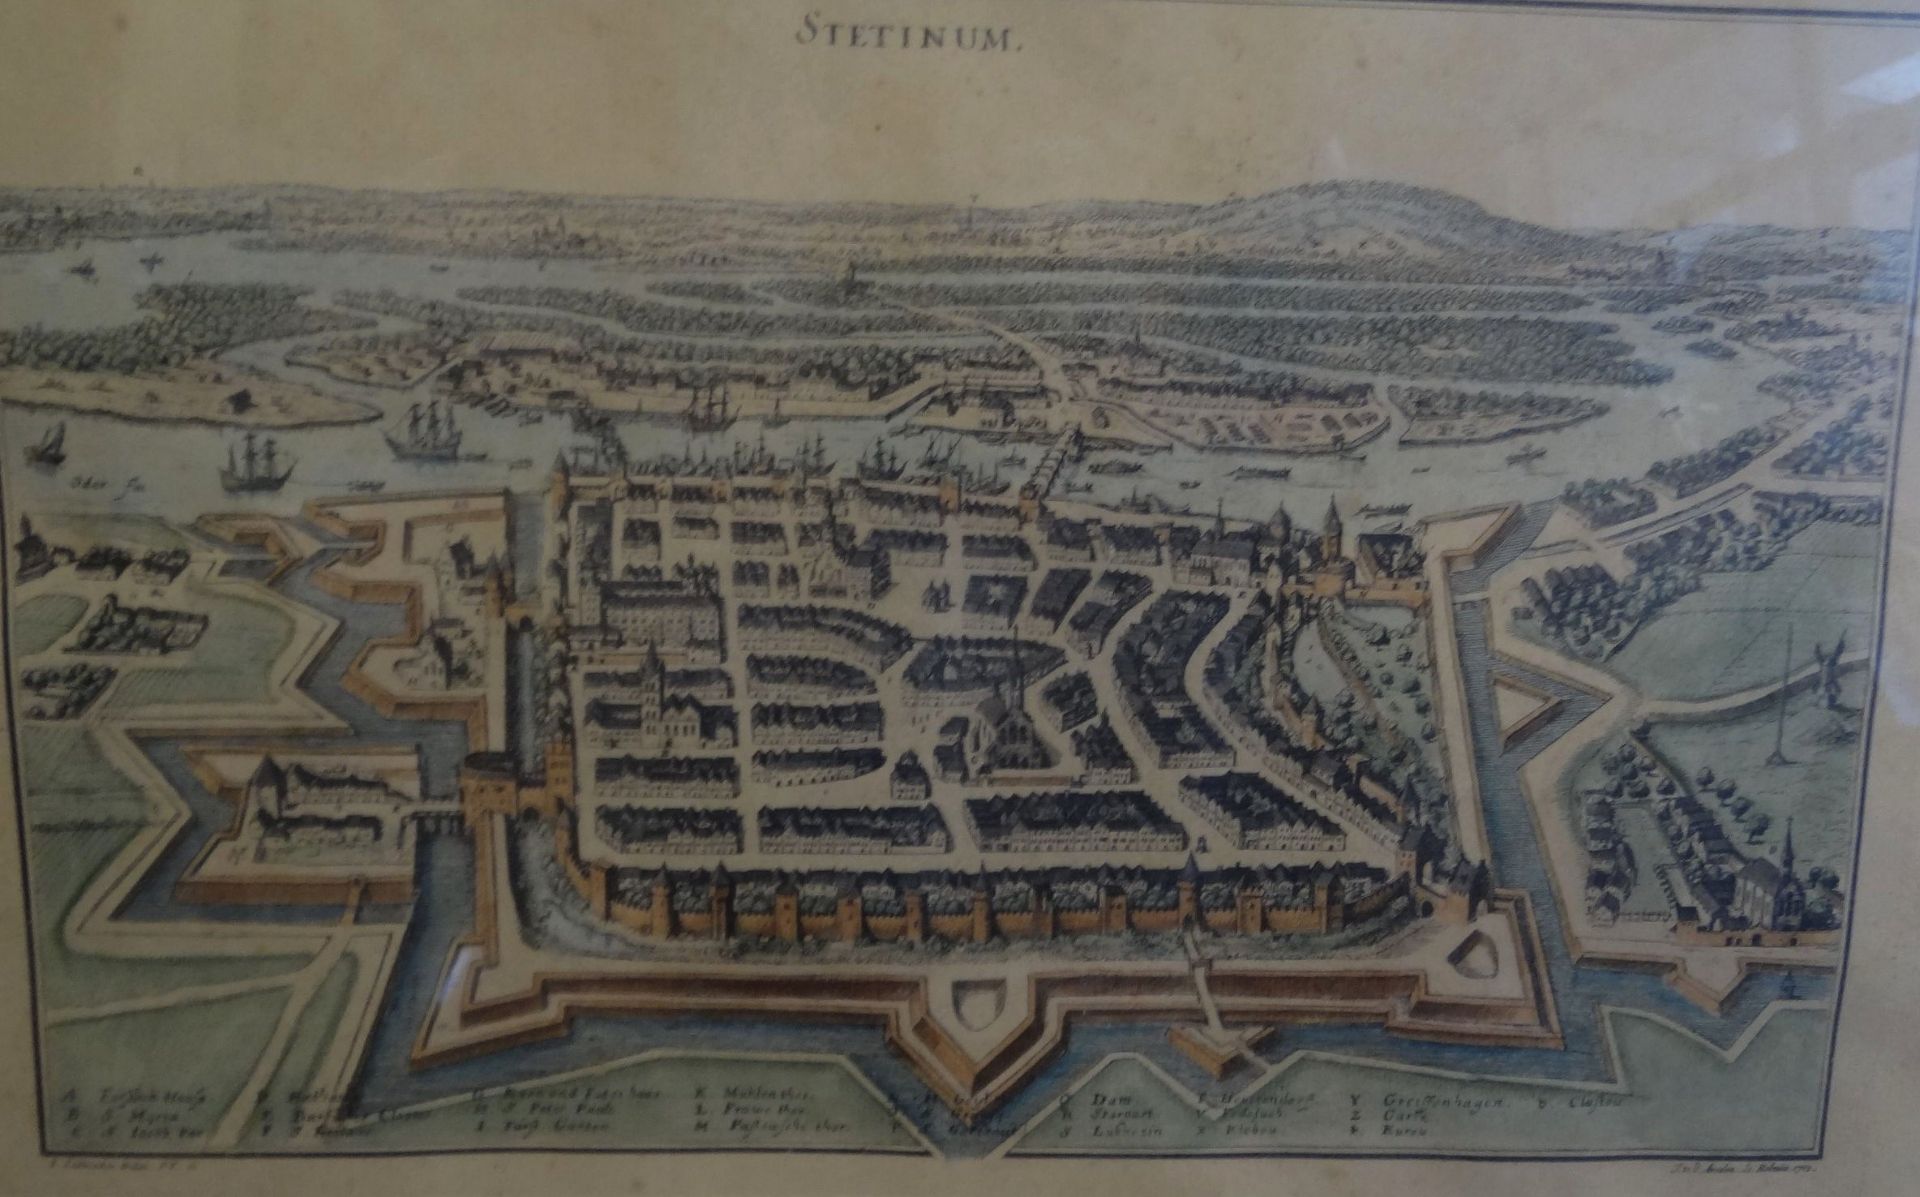 grosser Stadtplan von "Stettinum" von 1705, coloriert, ger/Glas, RG 61x85 cm